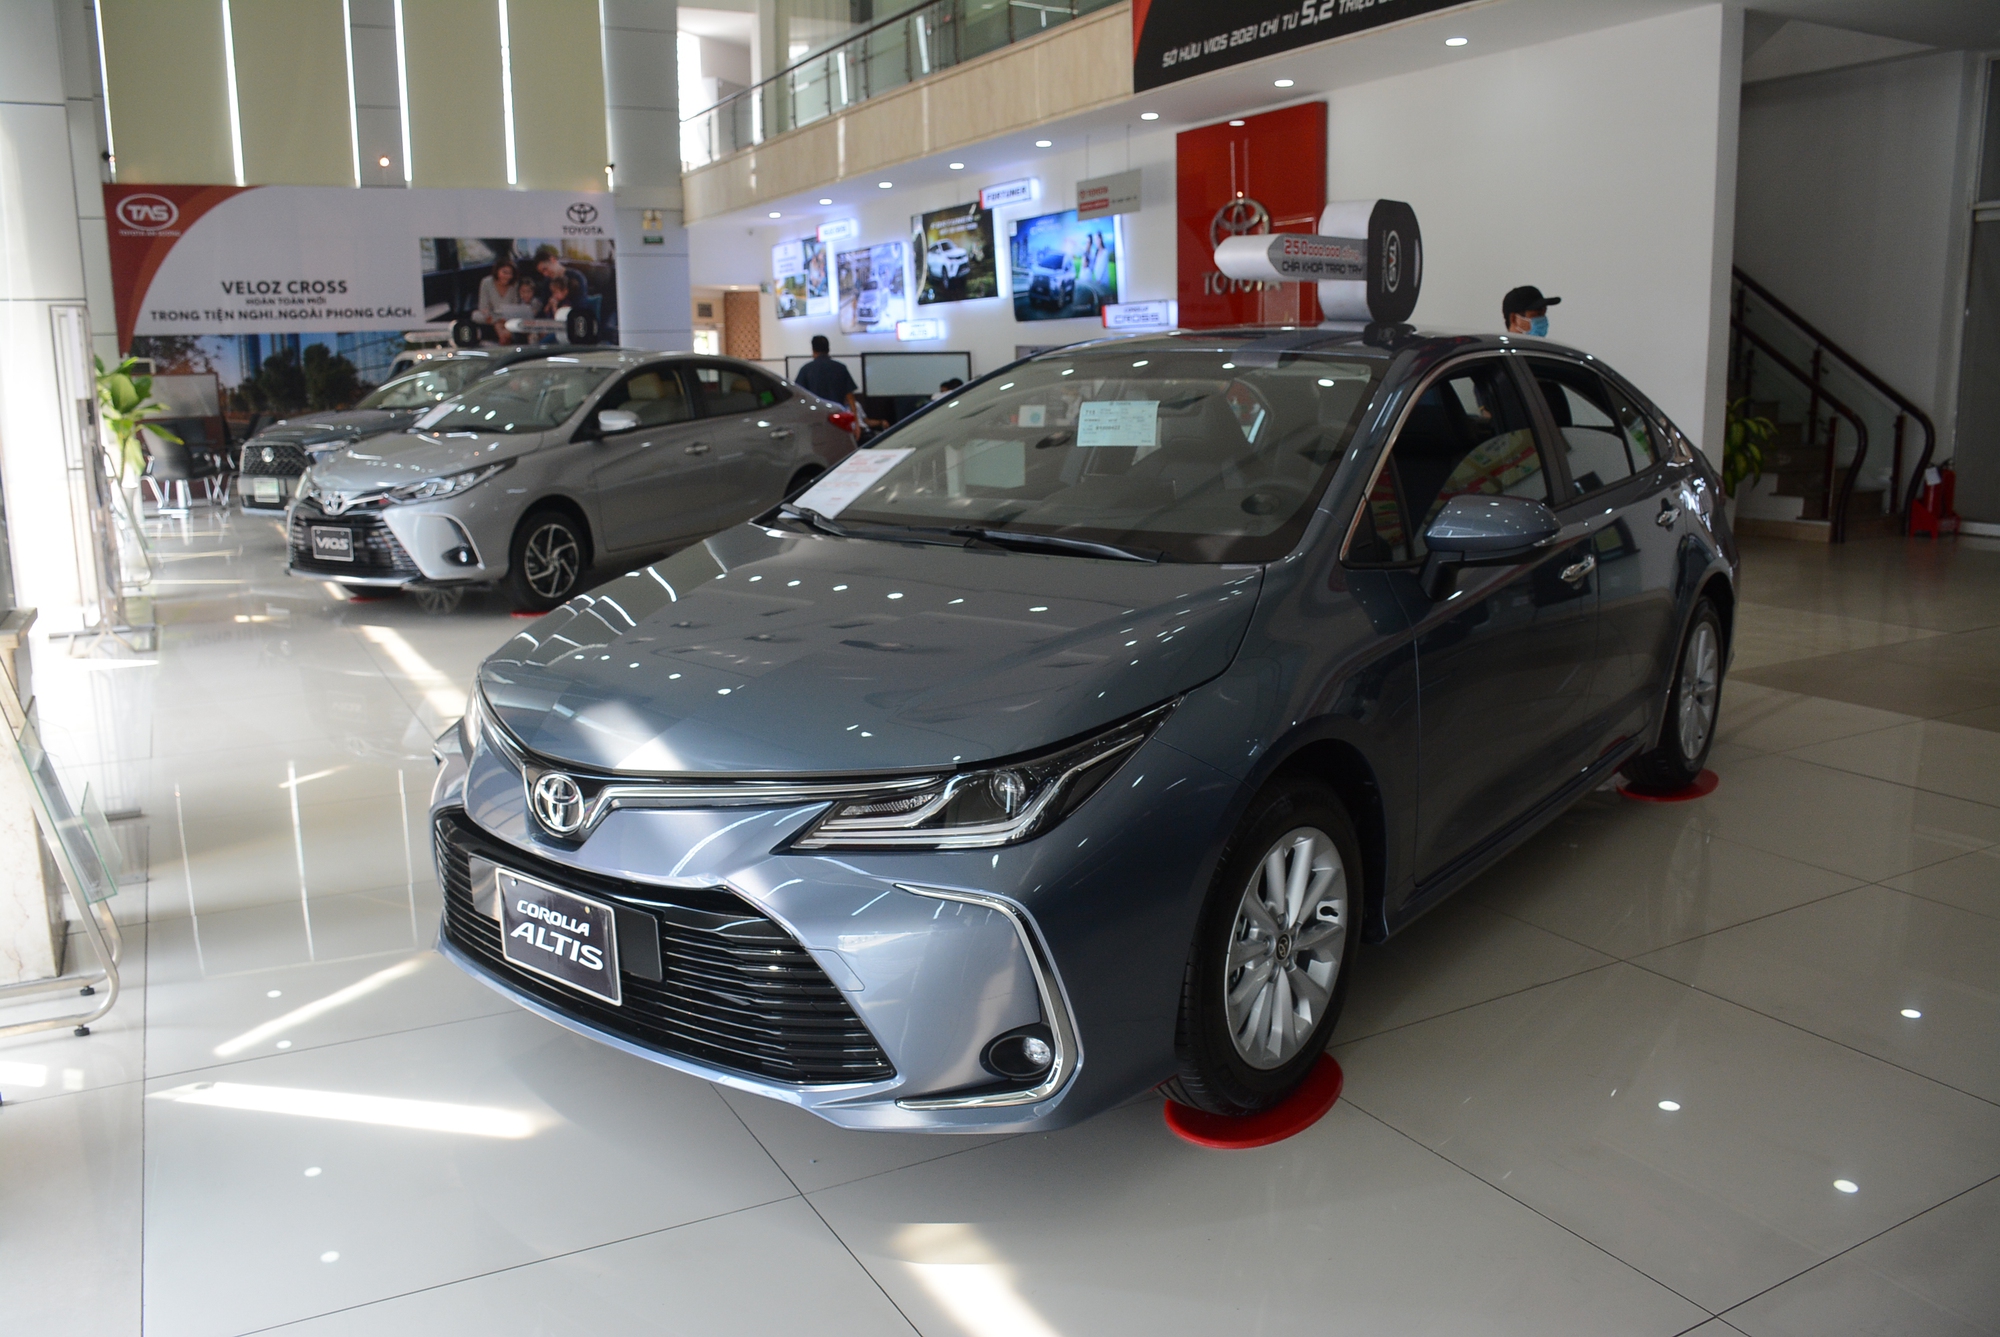 Mẫu xe thứ 3 của Toyota góp mặt trong danh sách này. Toyota Corolla Altis từng tạo được sức hút tại Việt Nam với sự ổn định, bền bỉ. Tuy nhiên, trong bối cảnh người Việt không còn chuộng xe sedan như trước đây, Corolla Altis cũng không còn giữ được sức hút. Doanh số bán mẫu xe này chỉ đạt 37 xe, tăng 1 xe so với tháng 2.2024 và lần đầu tiên trong năm nay góp mặt trong danh sách xe bán ít nhất tháng.